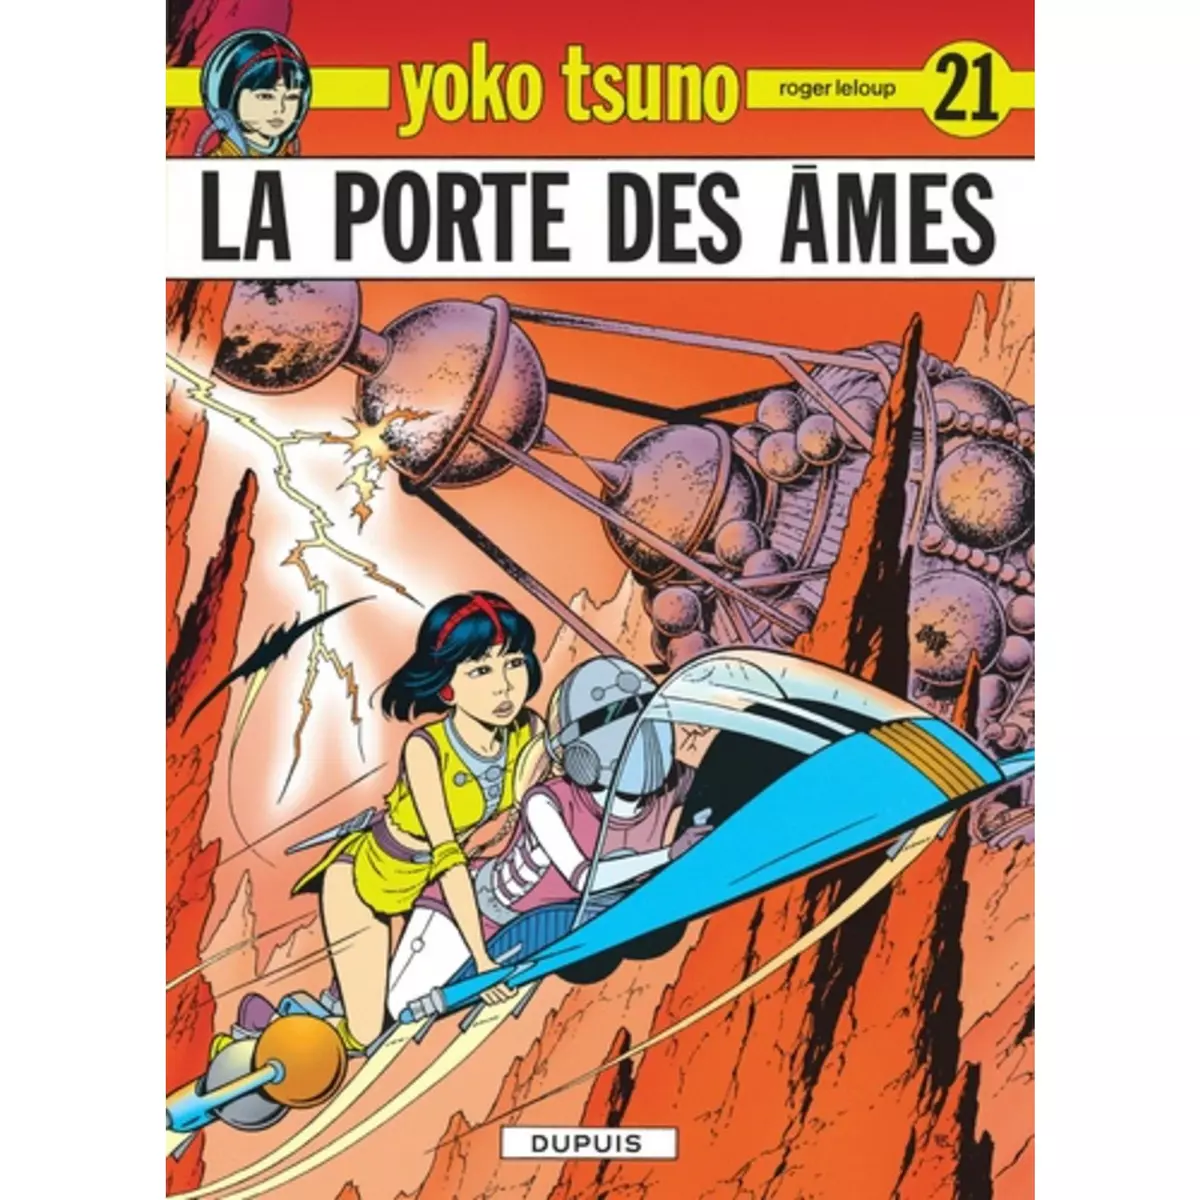  YOKO TSUNO TOME 21 : LA PORTE DES AMES, Leloup Roger